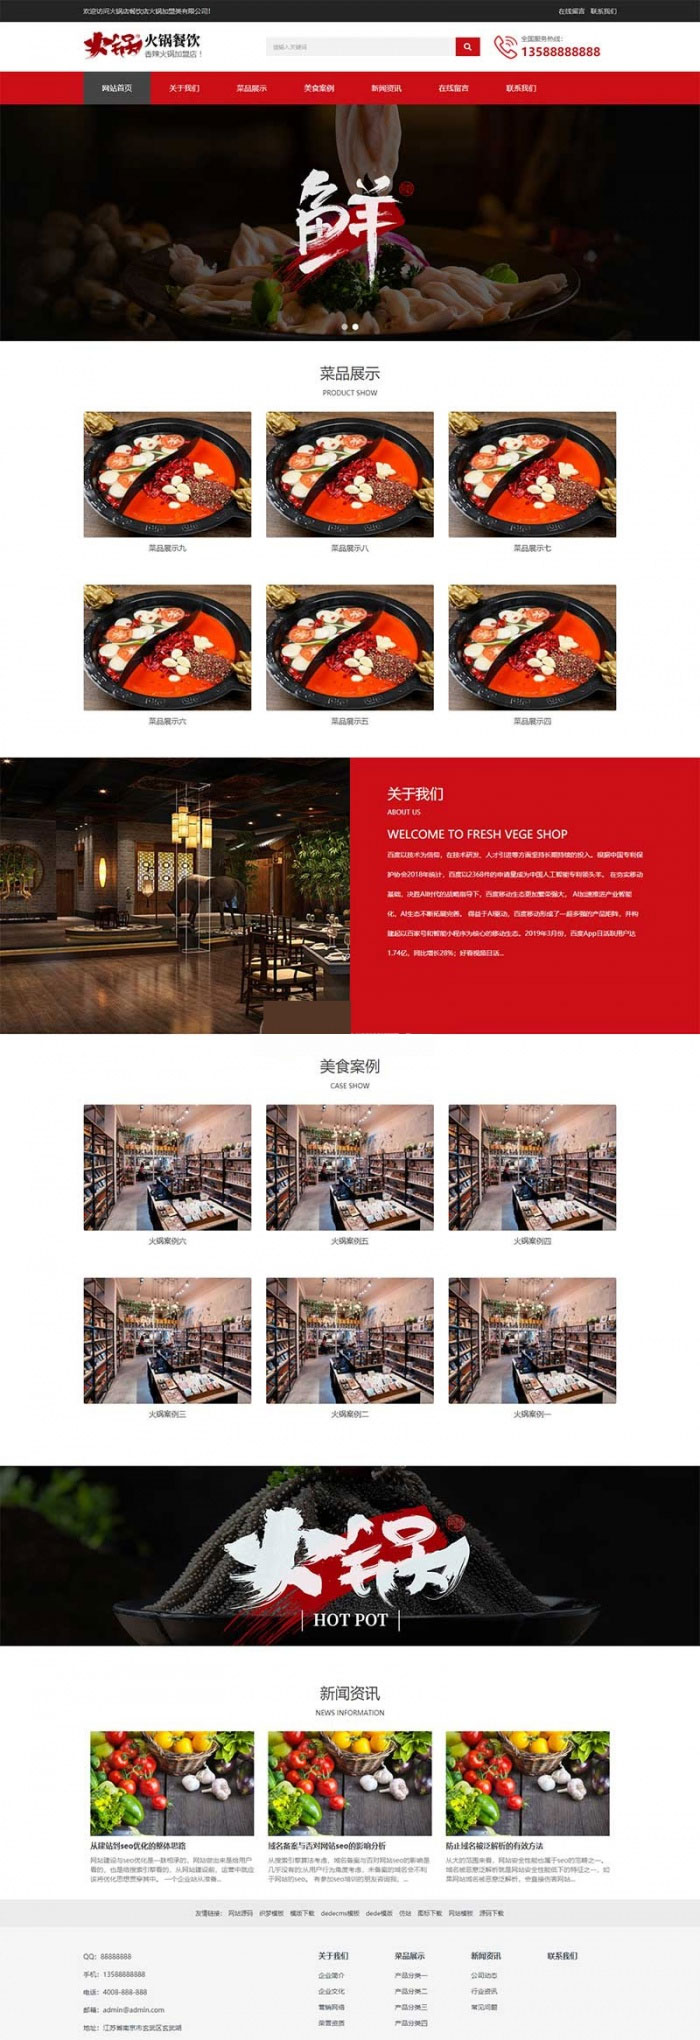 M437 响应式火锅餐饮加盟店企业网站模板(自适应手机移动端) 织梦dedecms模板